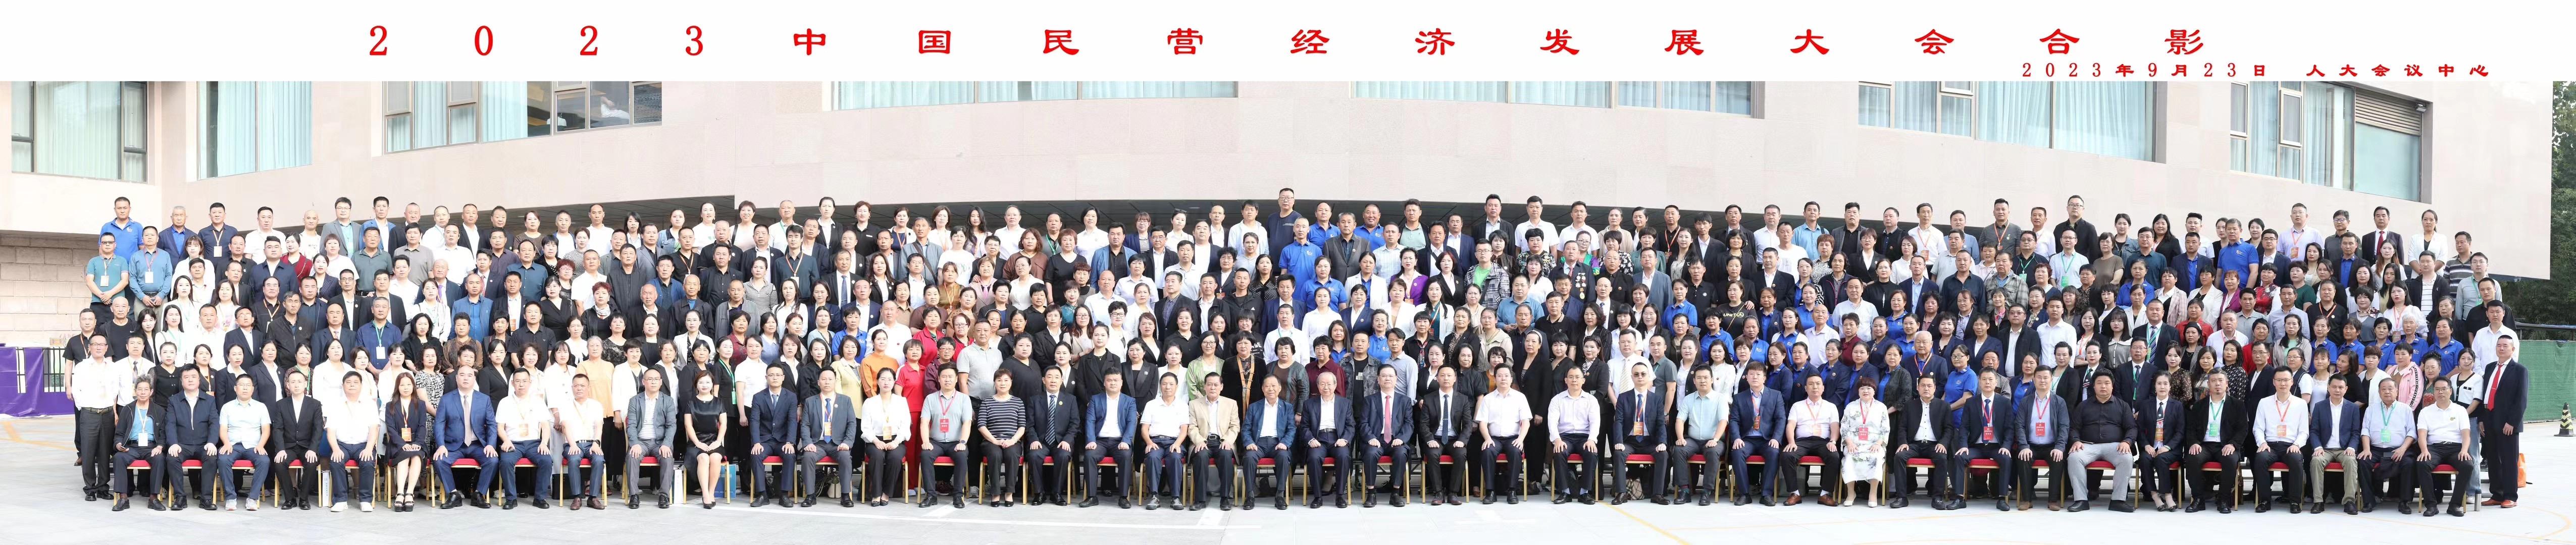 郑永春秘书长陪同第十二届全国政协副主席刘晓峰出席2023中国民营经济发展大会